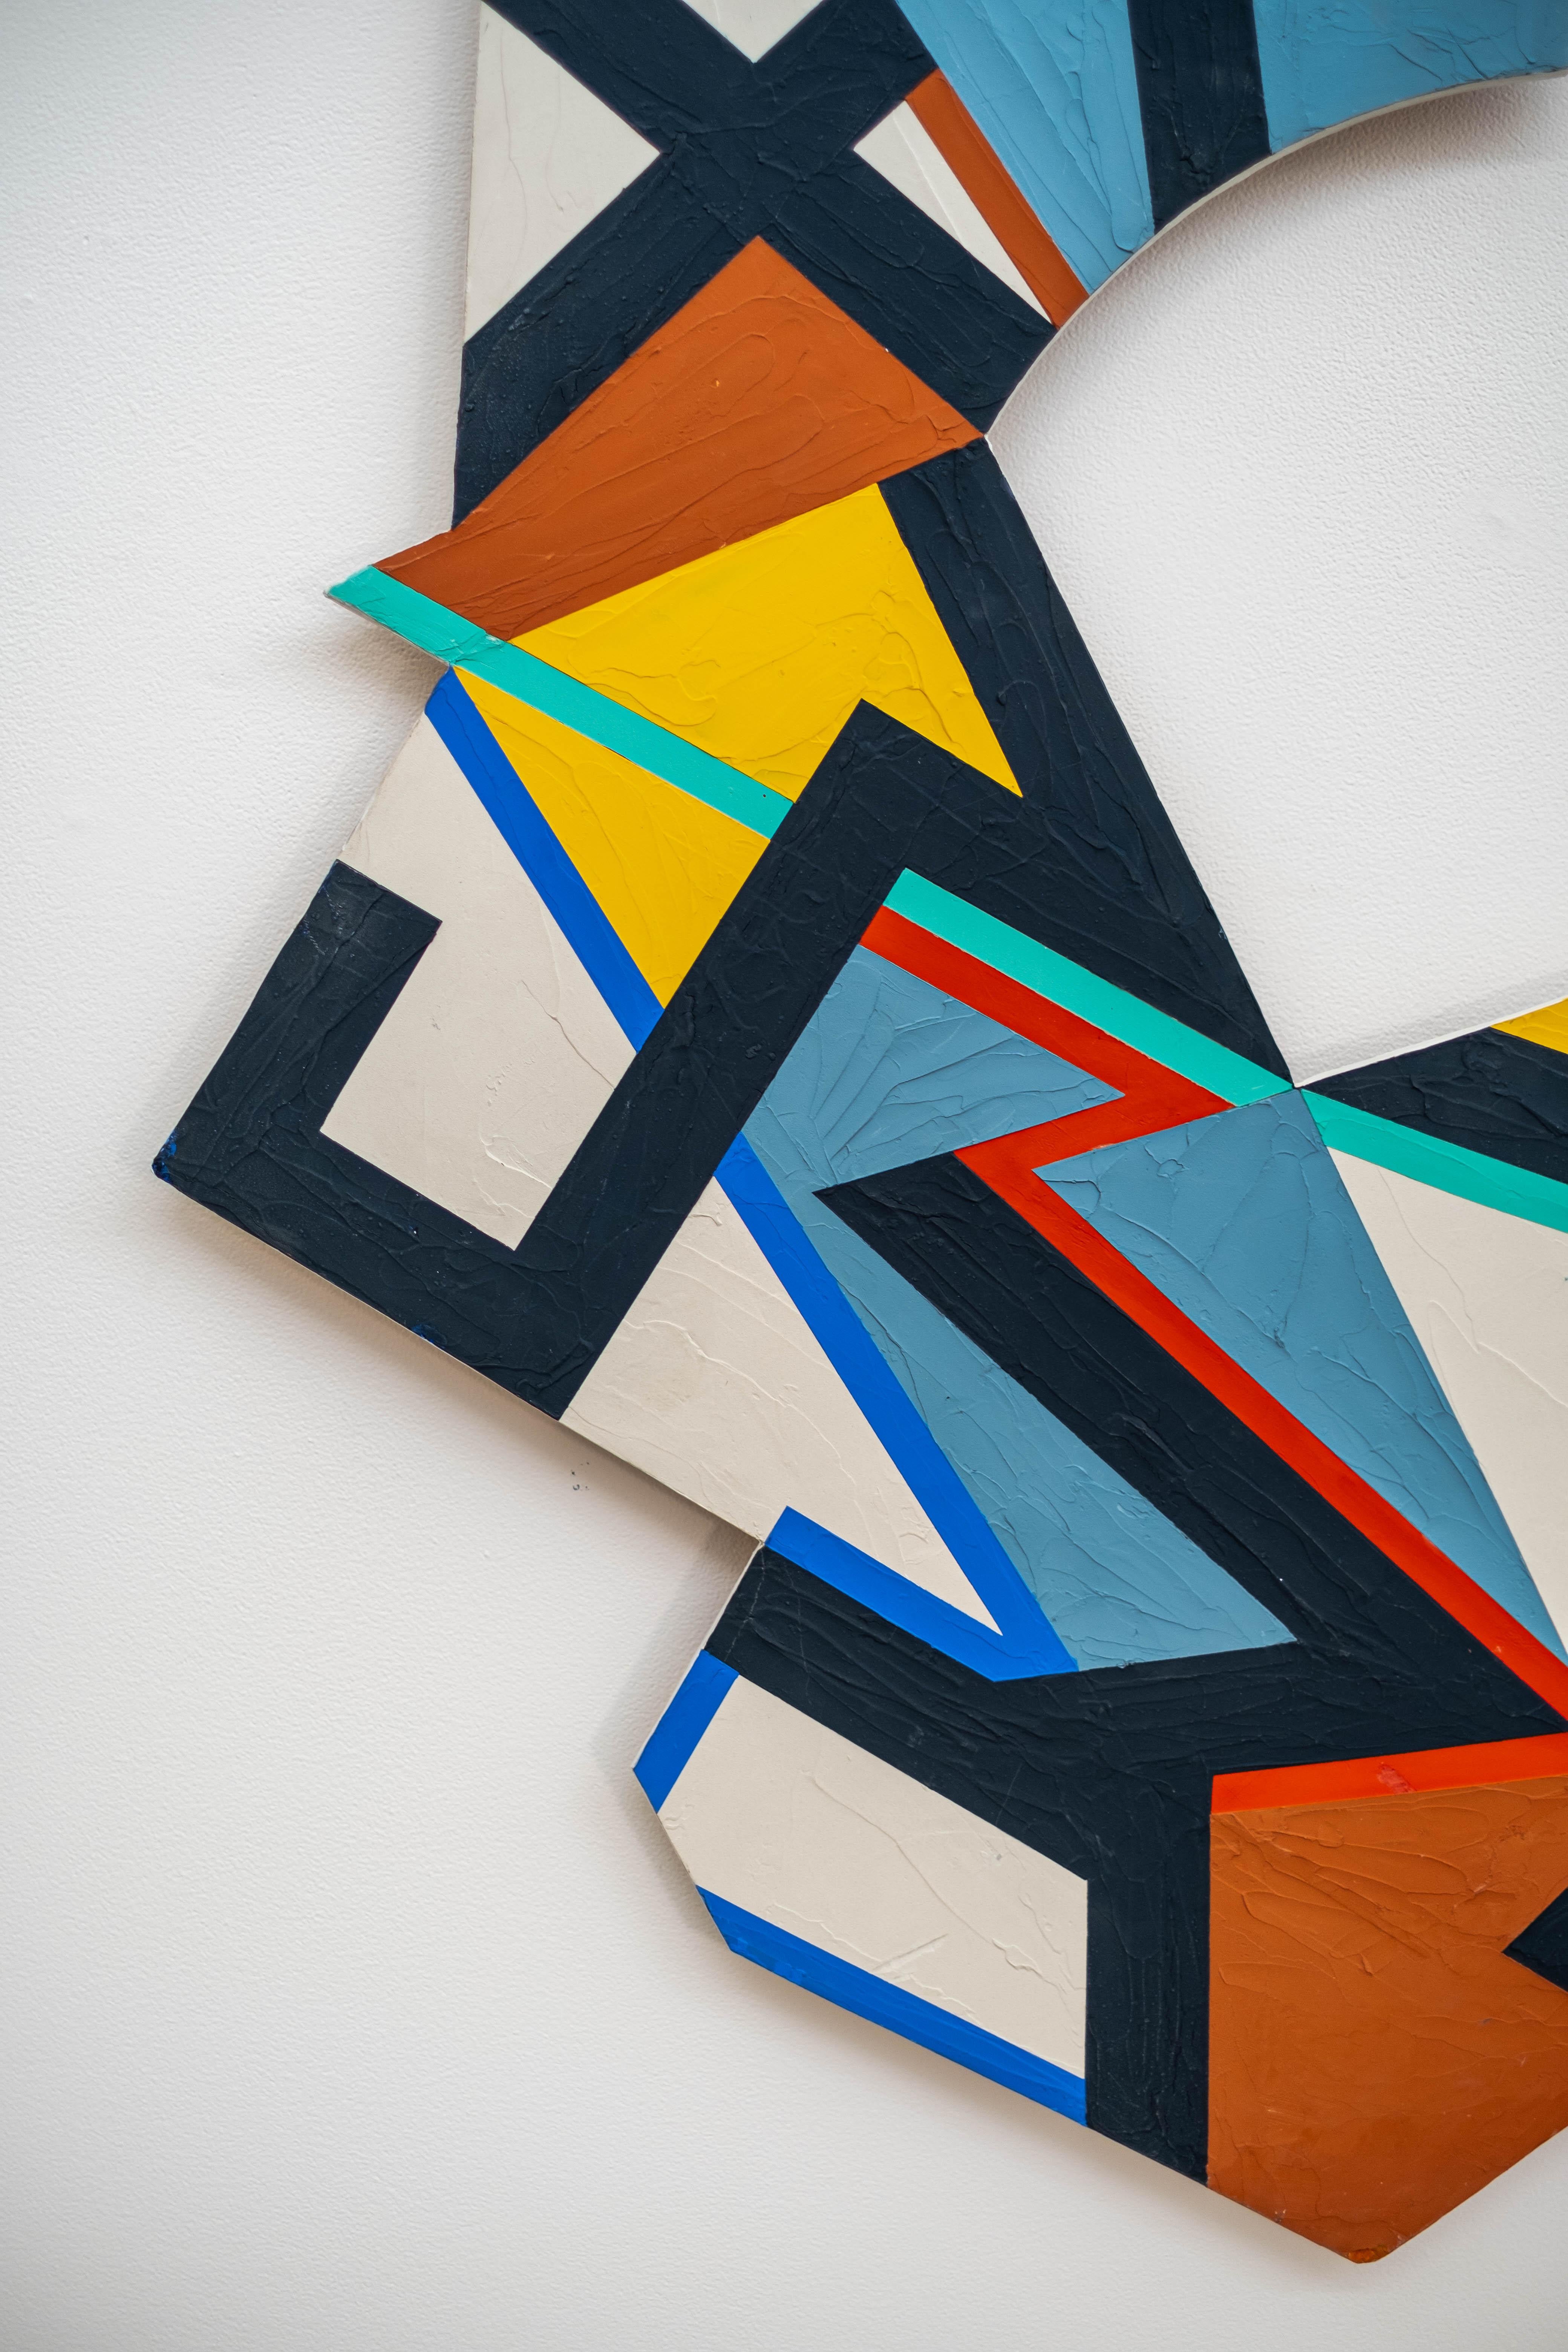 Yvonne Lammerich hat ein dynamisches Muster, kräftige Farben und geometrische Formen verwendet, um dieses visuell beeindruckende zeitgenössische Stück zu schaffen. Die bauklotzartigen Formen - Linien, Dreiecke, Quadrate und architektonische Bögen -